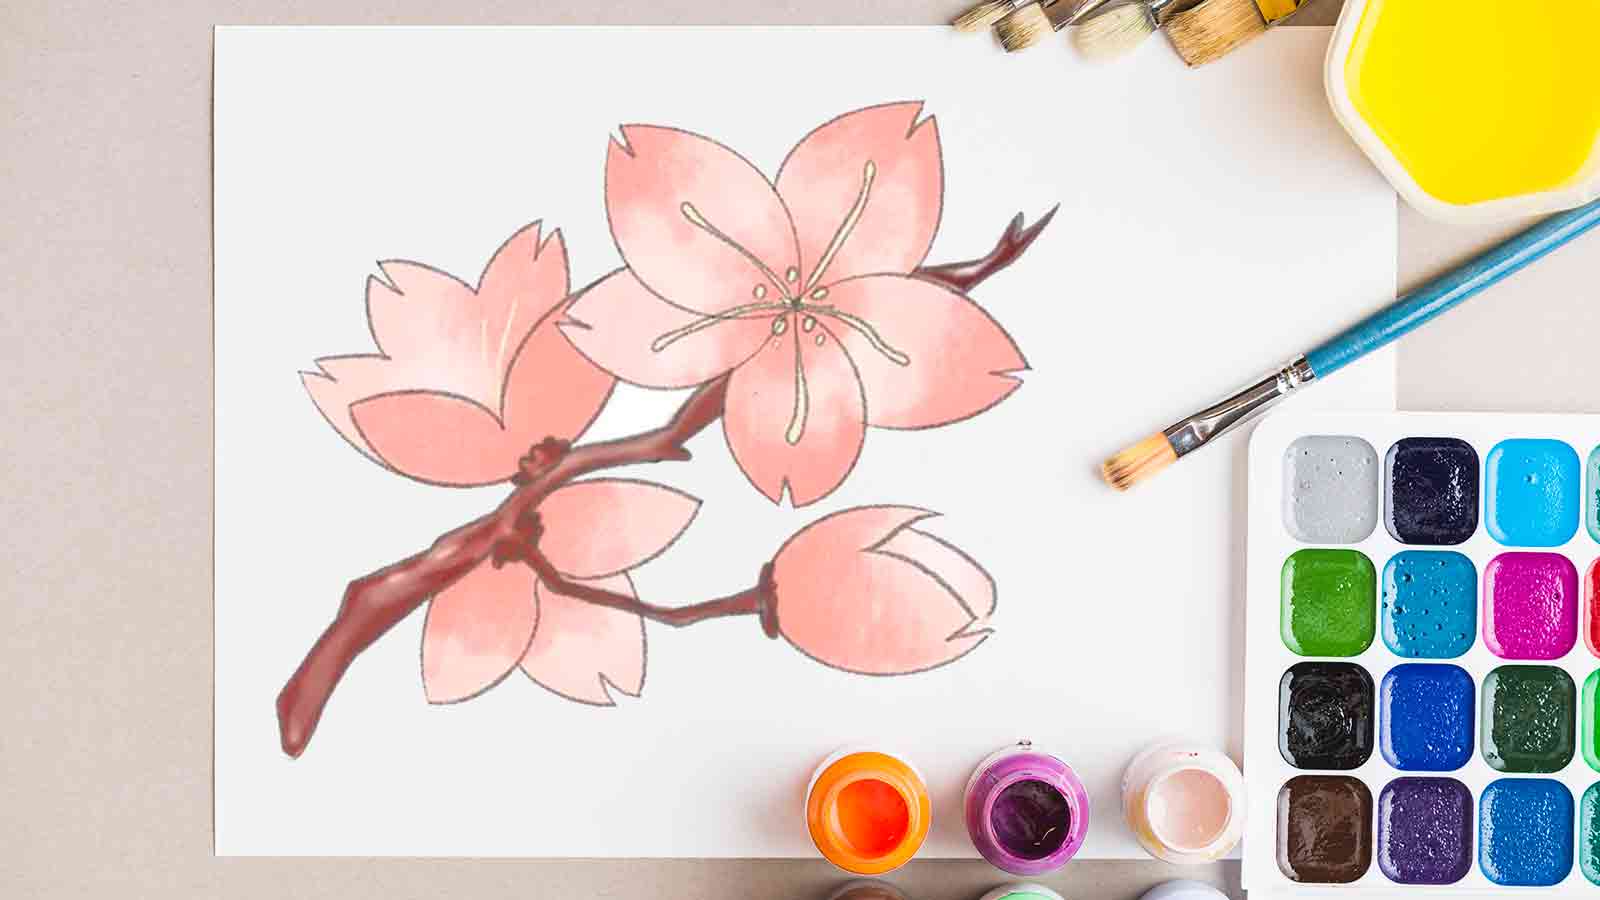 نقاشی شکوفه گیلاس